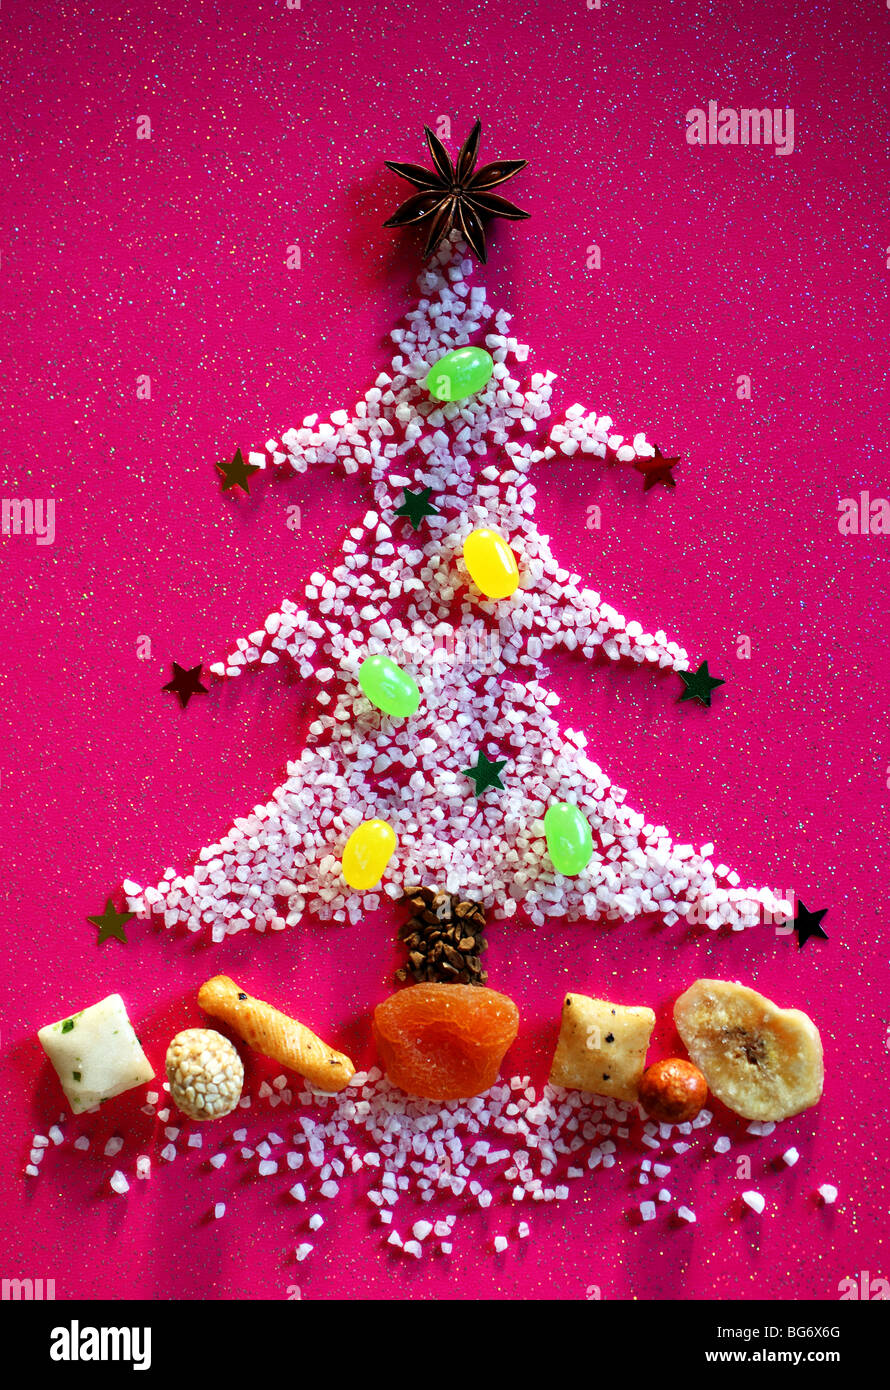 Essen würzigen Weihnachtsbaum Pfeffer Salz essen Essen Mahlzeit Menü lecker lecker zuckerhaltigen Süßigkeiten Bonbon Zucker wenig Futter füttern Stockfoto